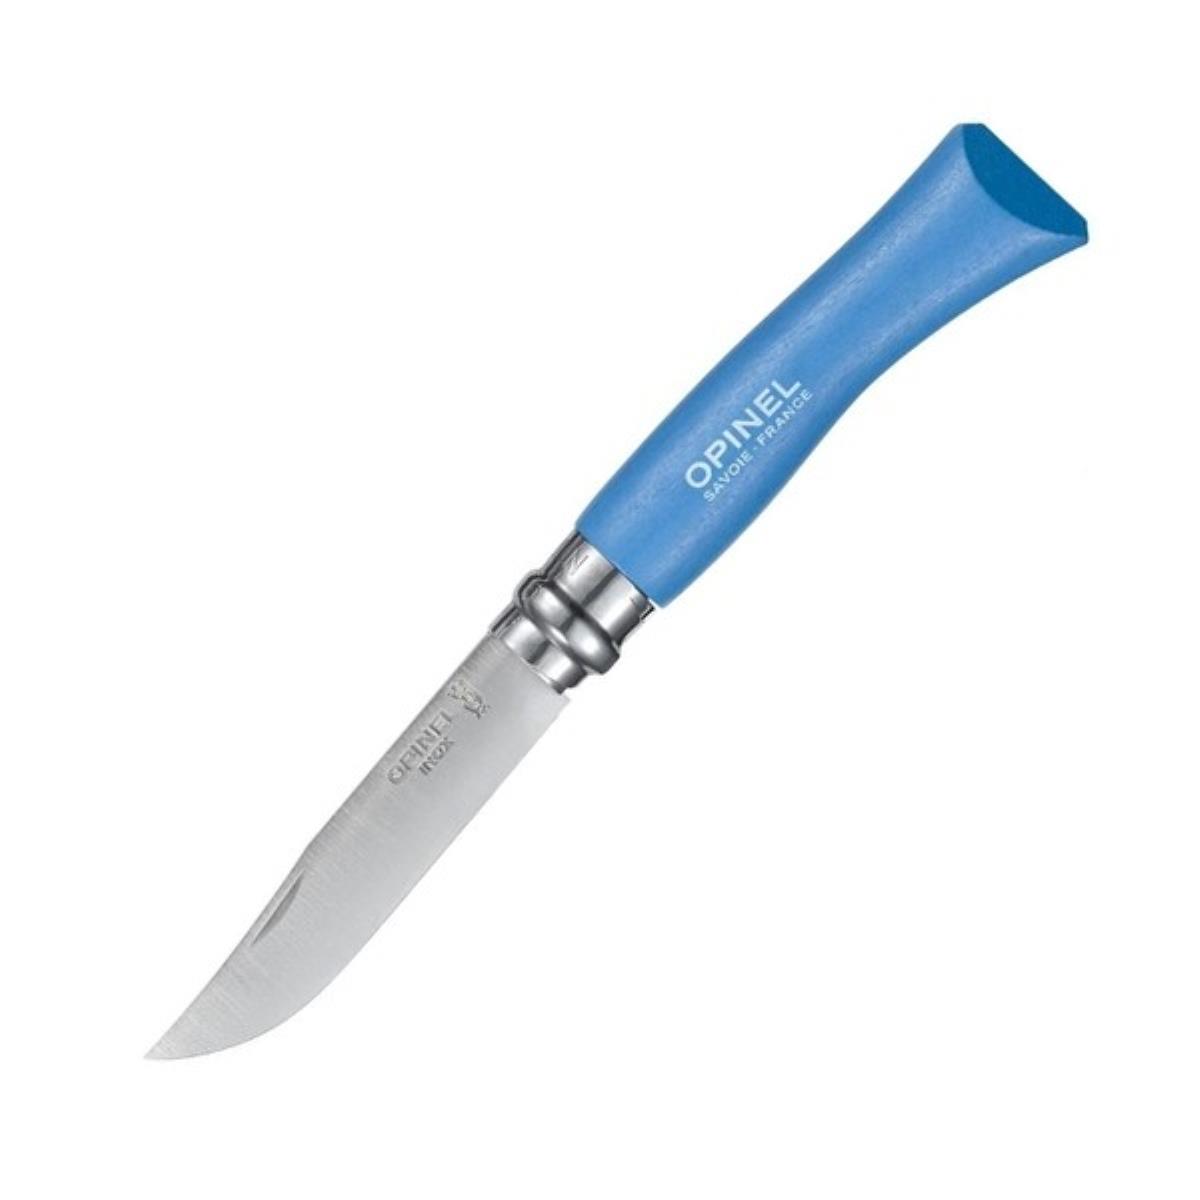 Нож №7 VRI Colored Tradition Sky blue нерж. сталь, рукоять граб, длина клинка8см (голубой) OPINEL доска разделочная для подачи с ручкой adelica 36×14 5×2 см тёмный граб